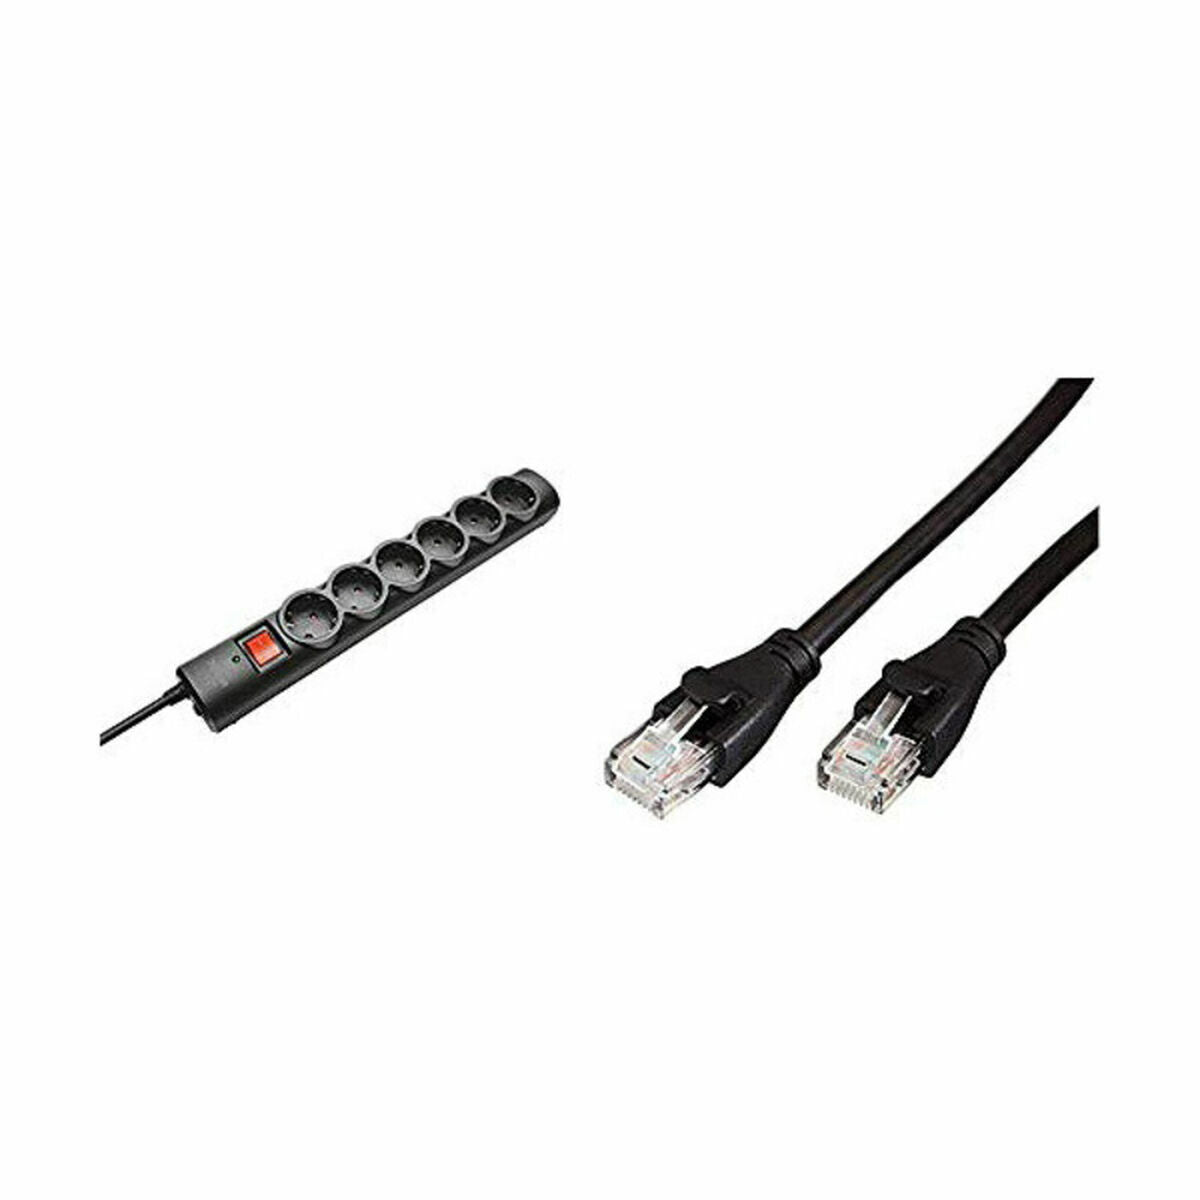 Schuko 6 Way Multi-socket Adapter Trust 21059 230 V Black